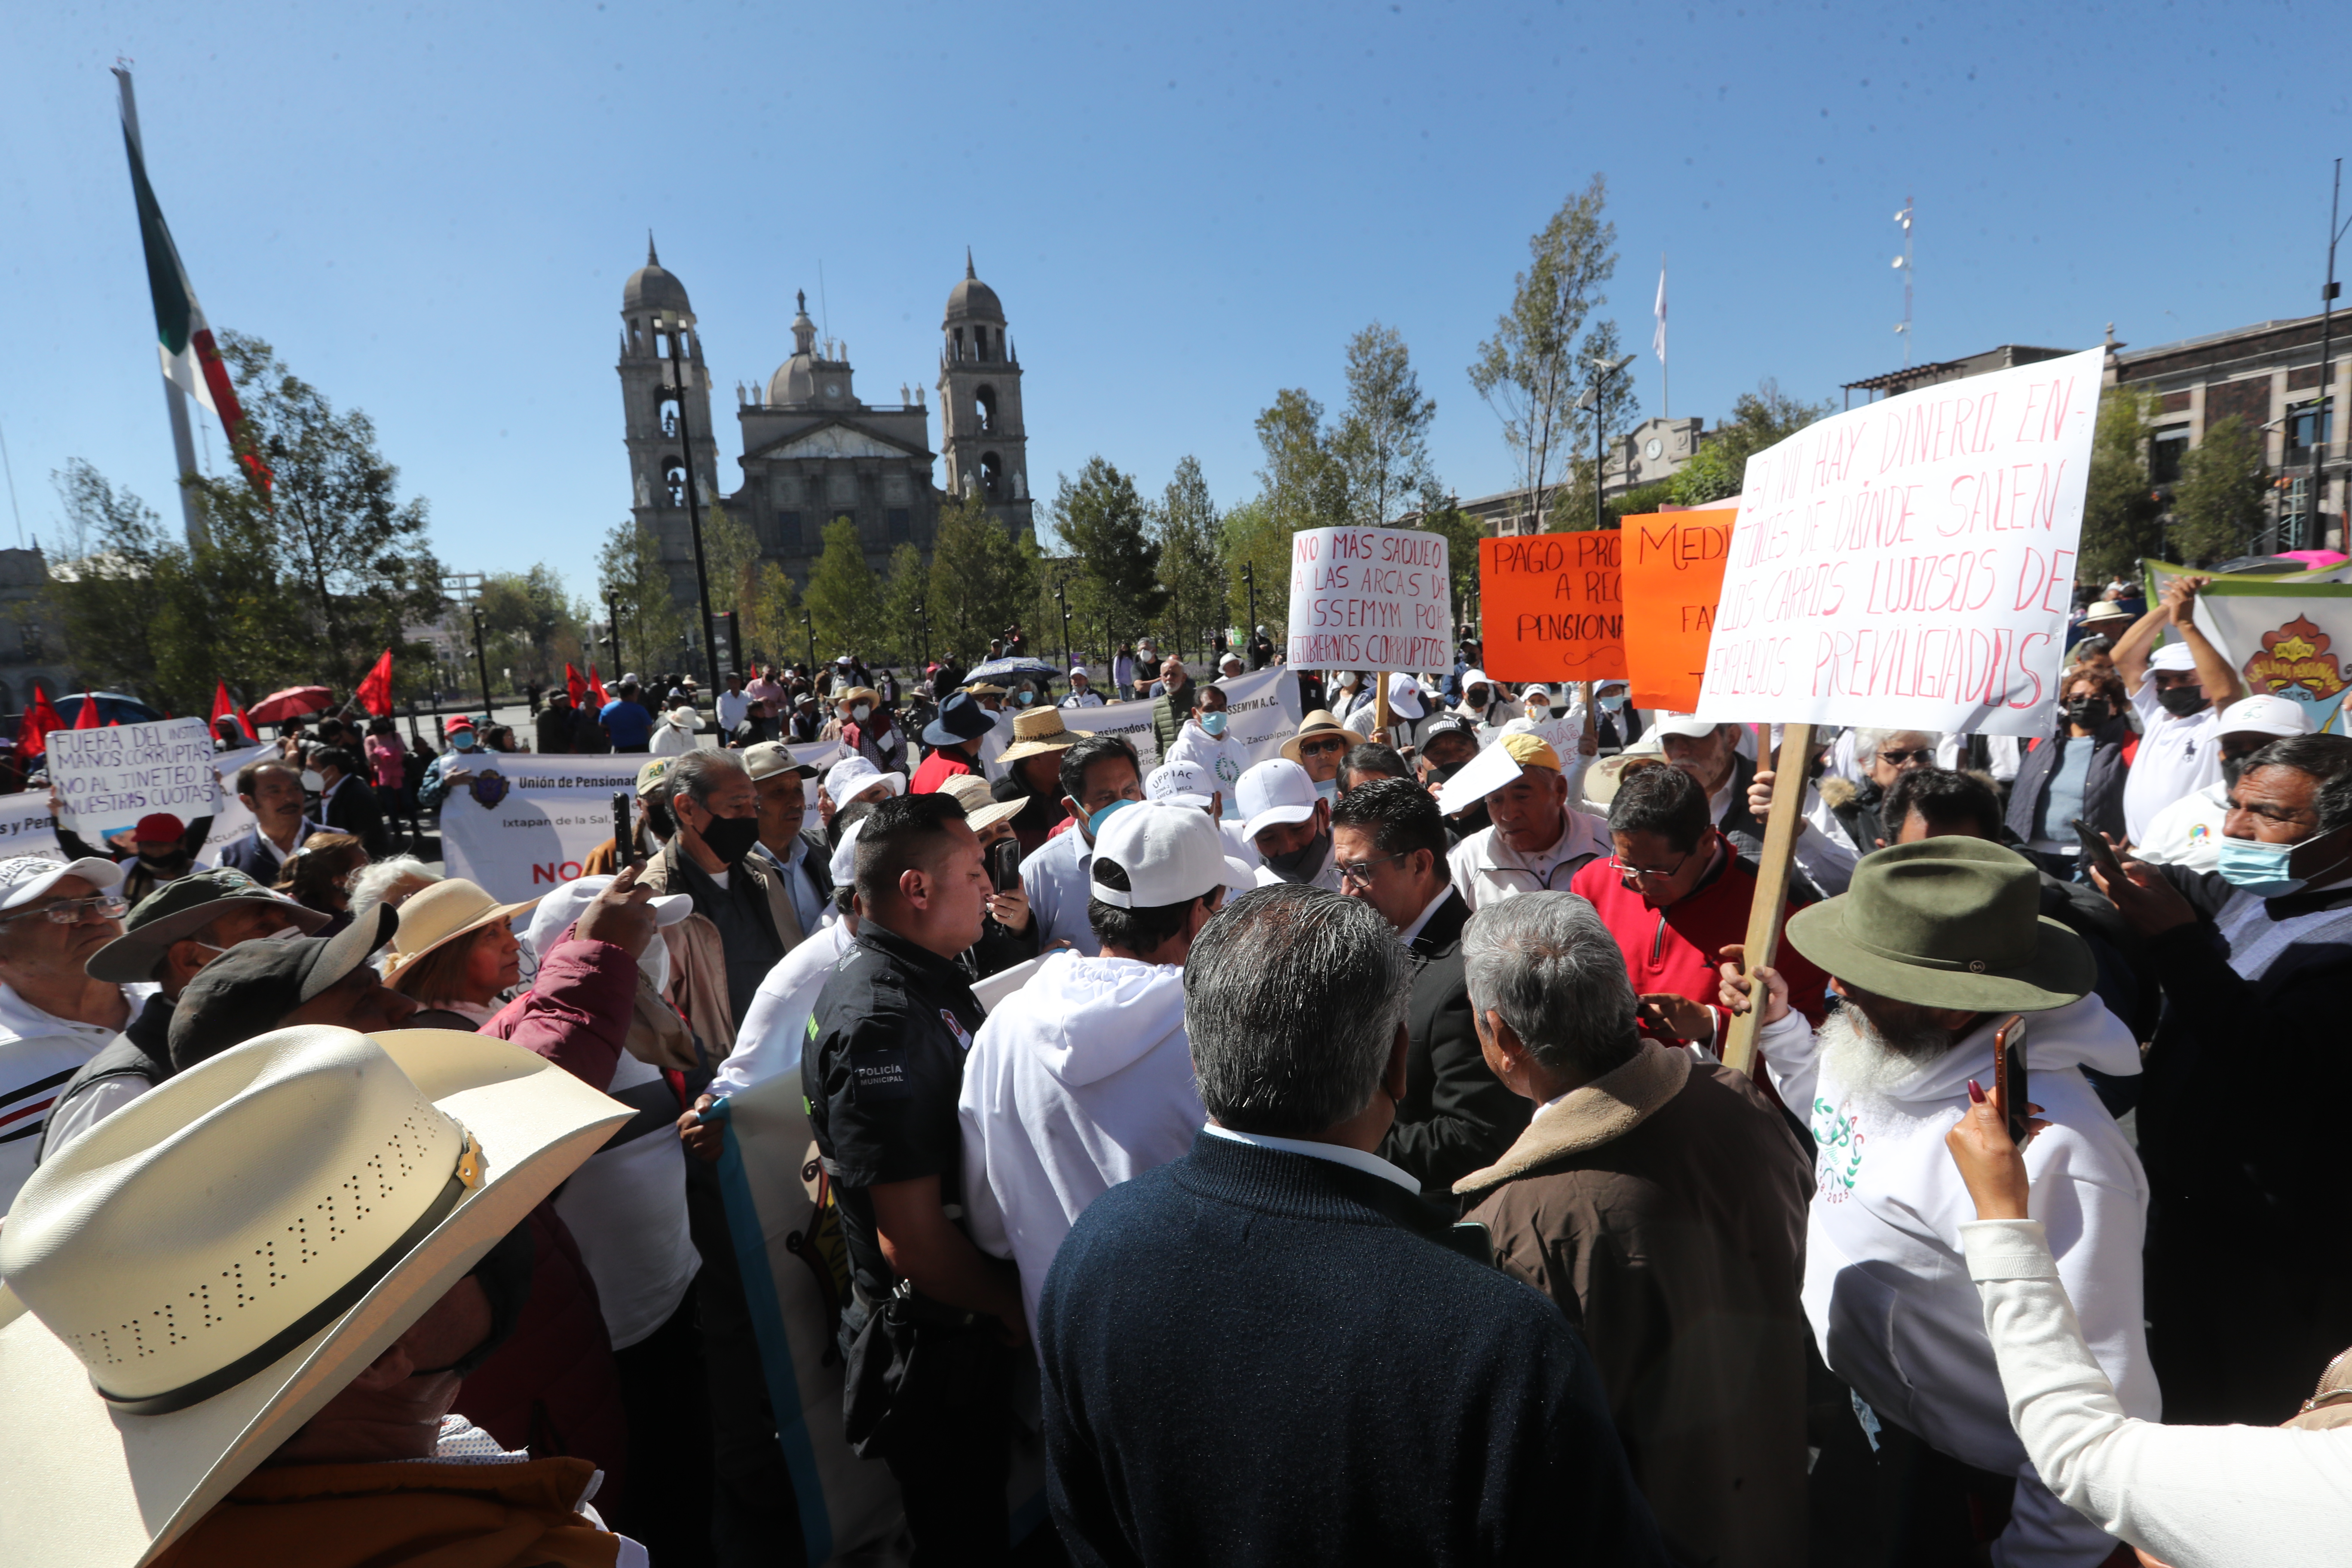 Manifestaciones en Toluca, paralizan el centro Histórico en Toluca